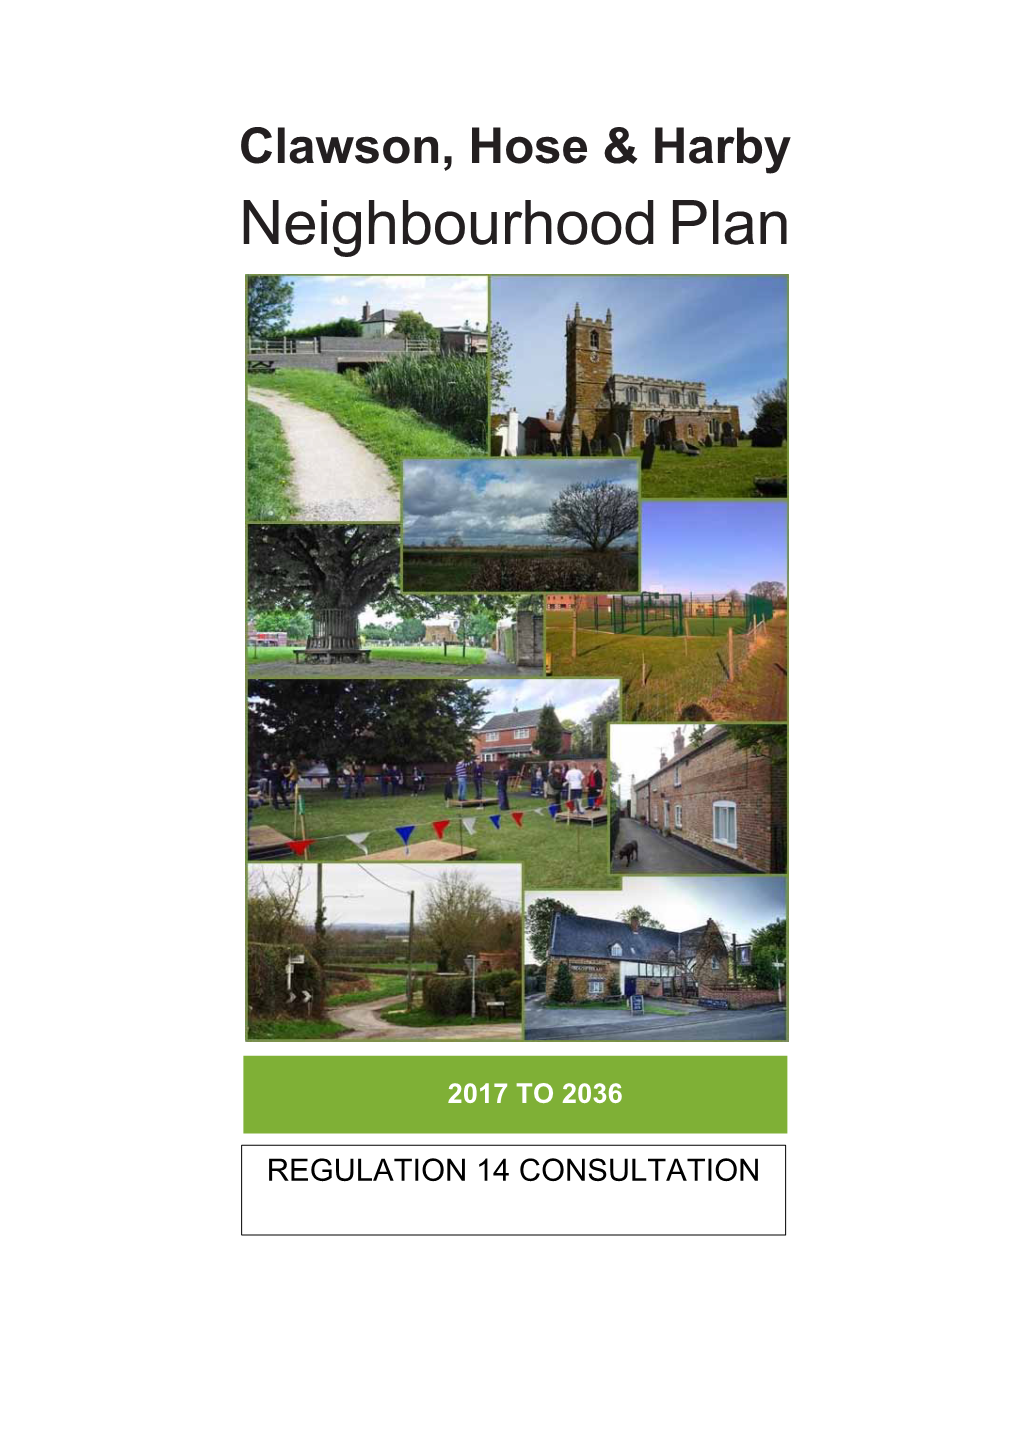 CHH Regulation 14 Neighbourhood Plan